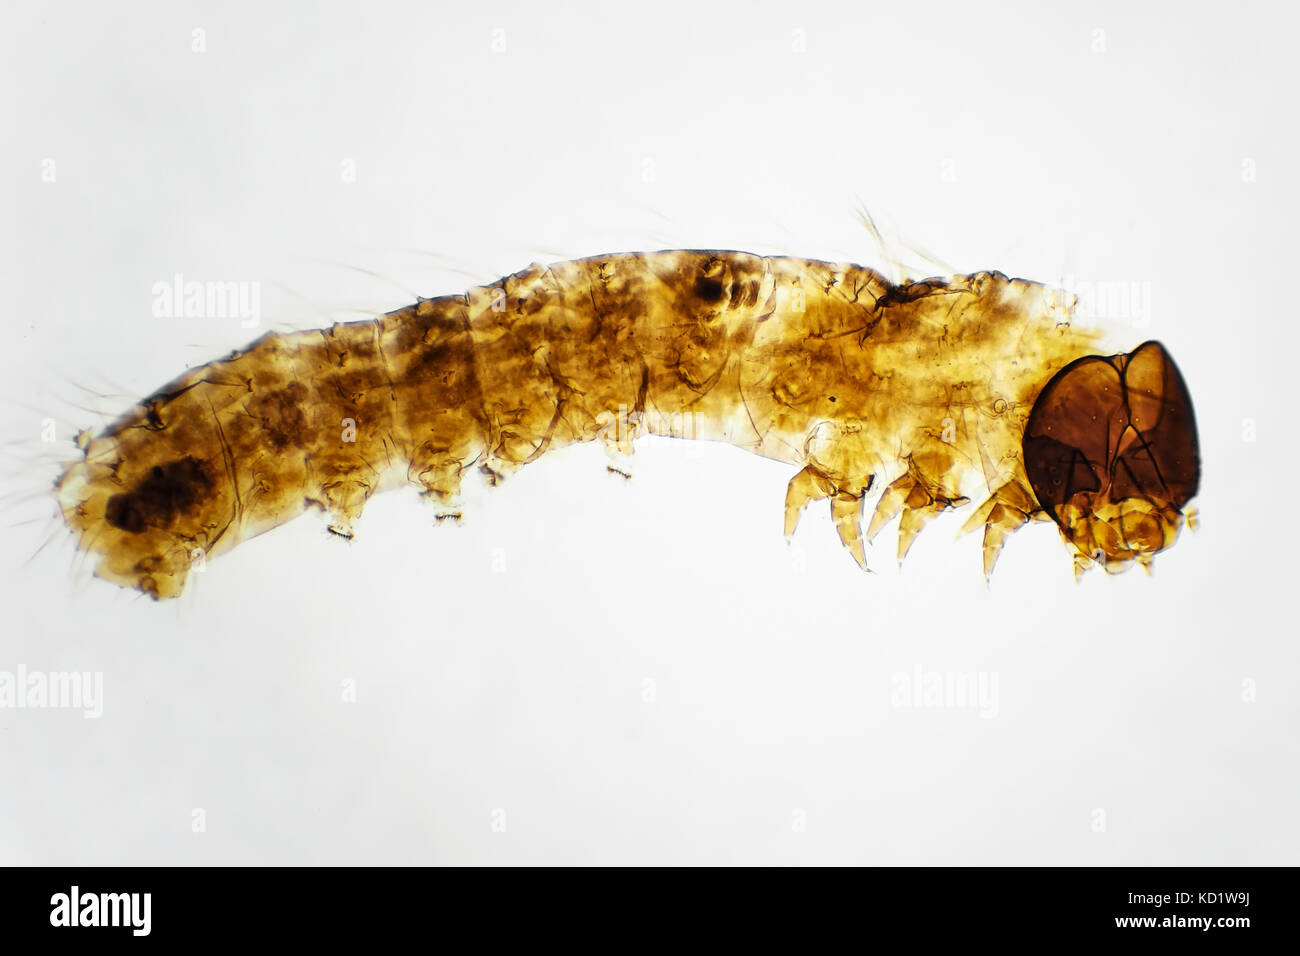 Licht Aufnahme eines Silkworm Larve auf einem vorbereiteten Objektträger, dargestellt ist ca. 3,6 mm Breite Stockfoto